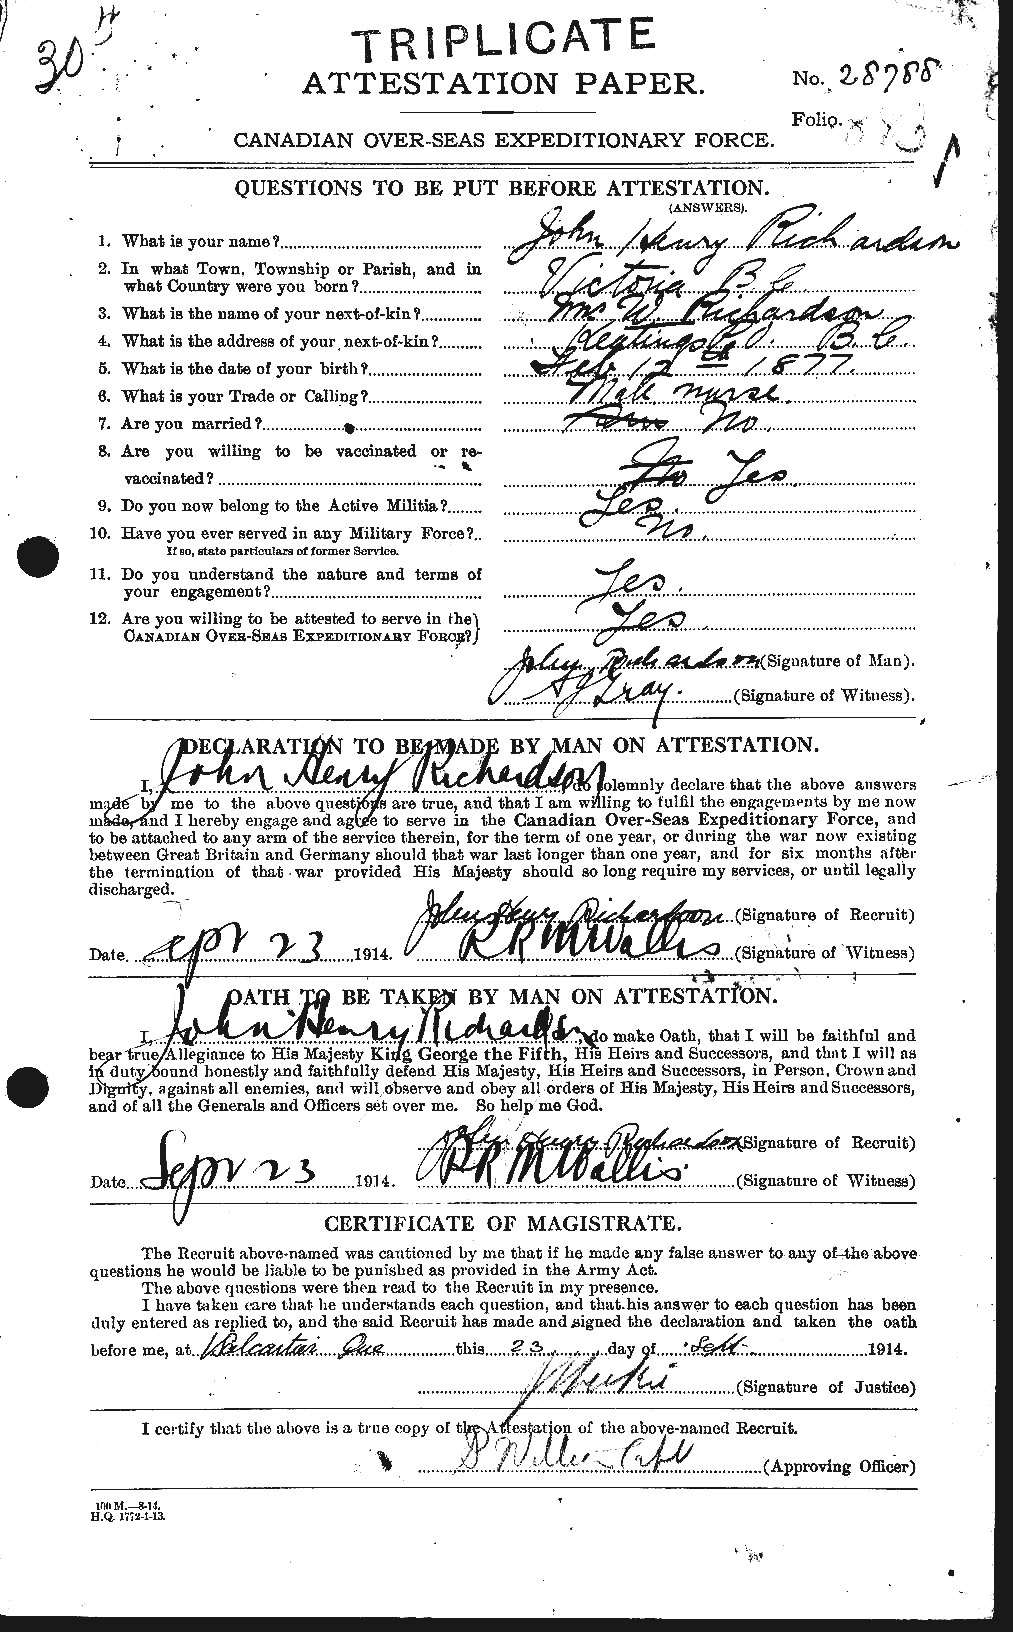 Dossiers du Personnel de la Première Guerre mondiale - CEC 605061a